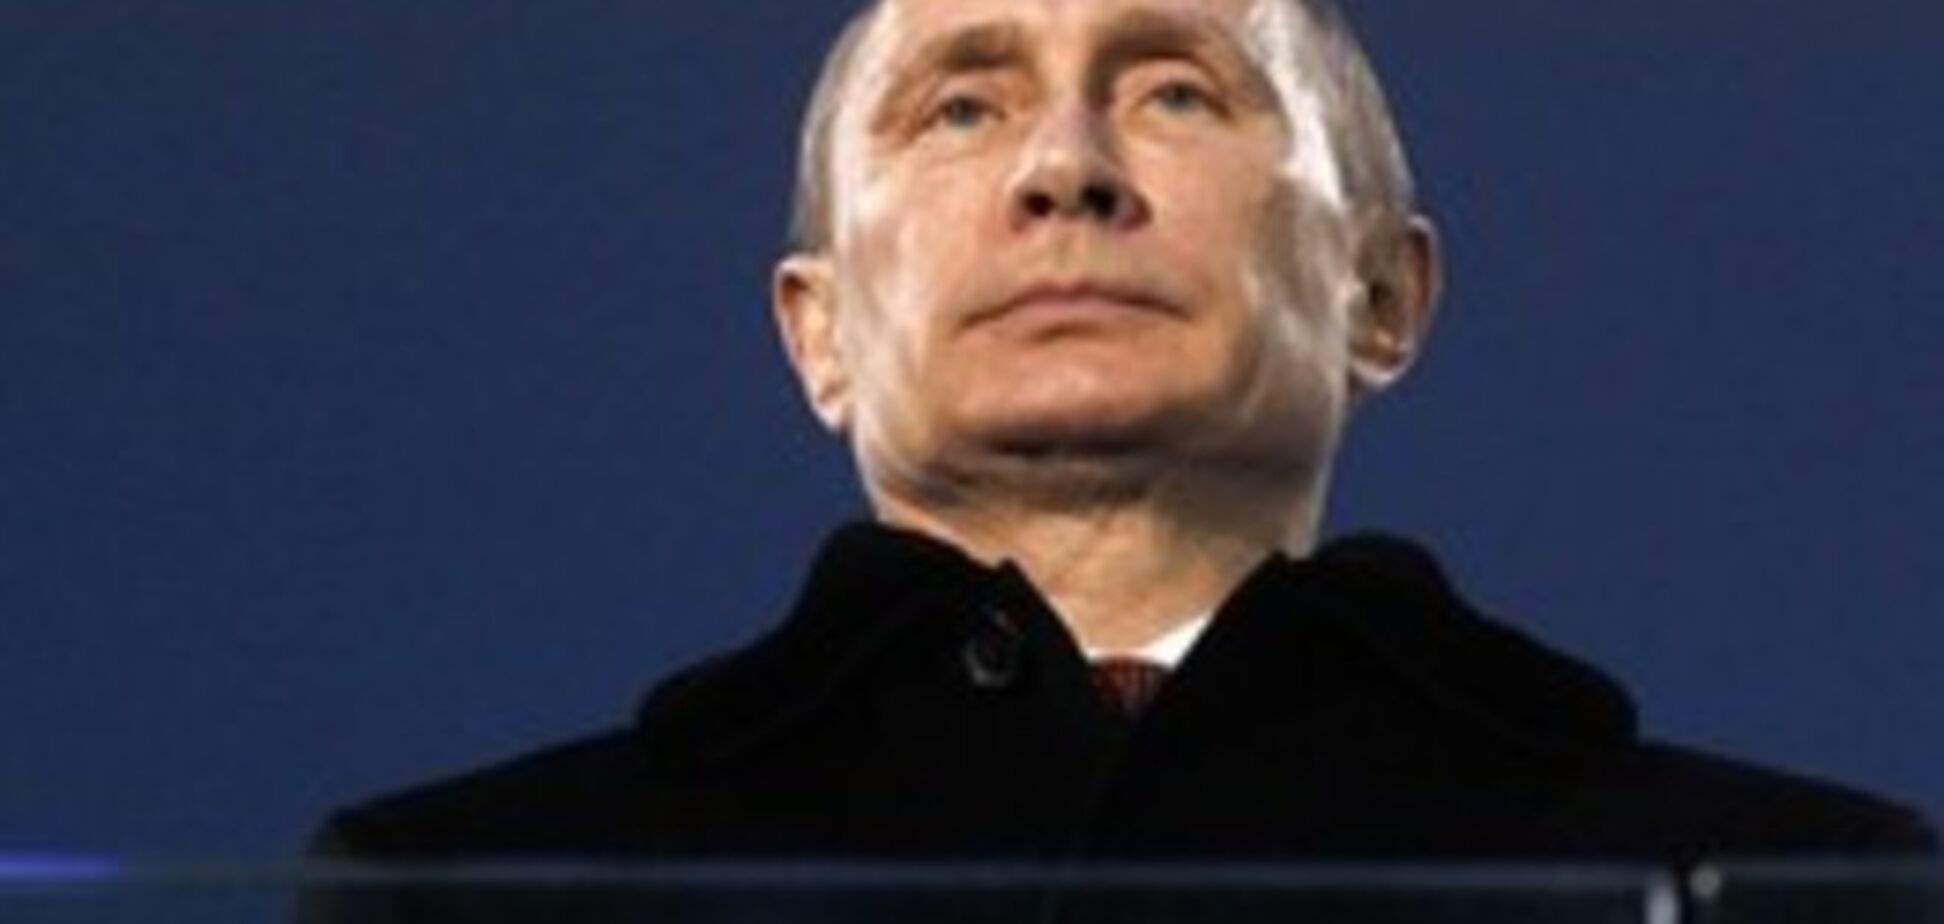 Захват новых территорий - единственный способ для Путина удержать власть - эксперт